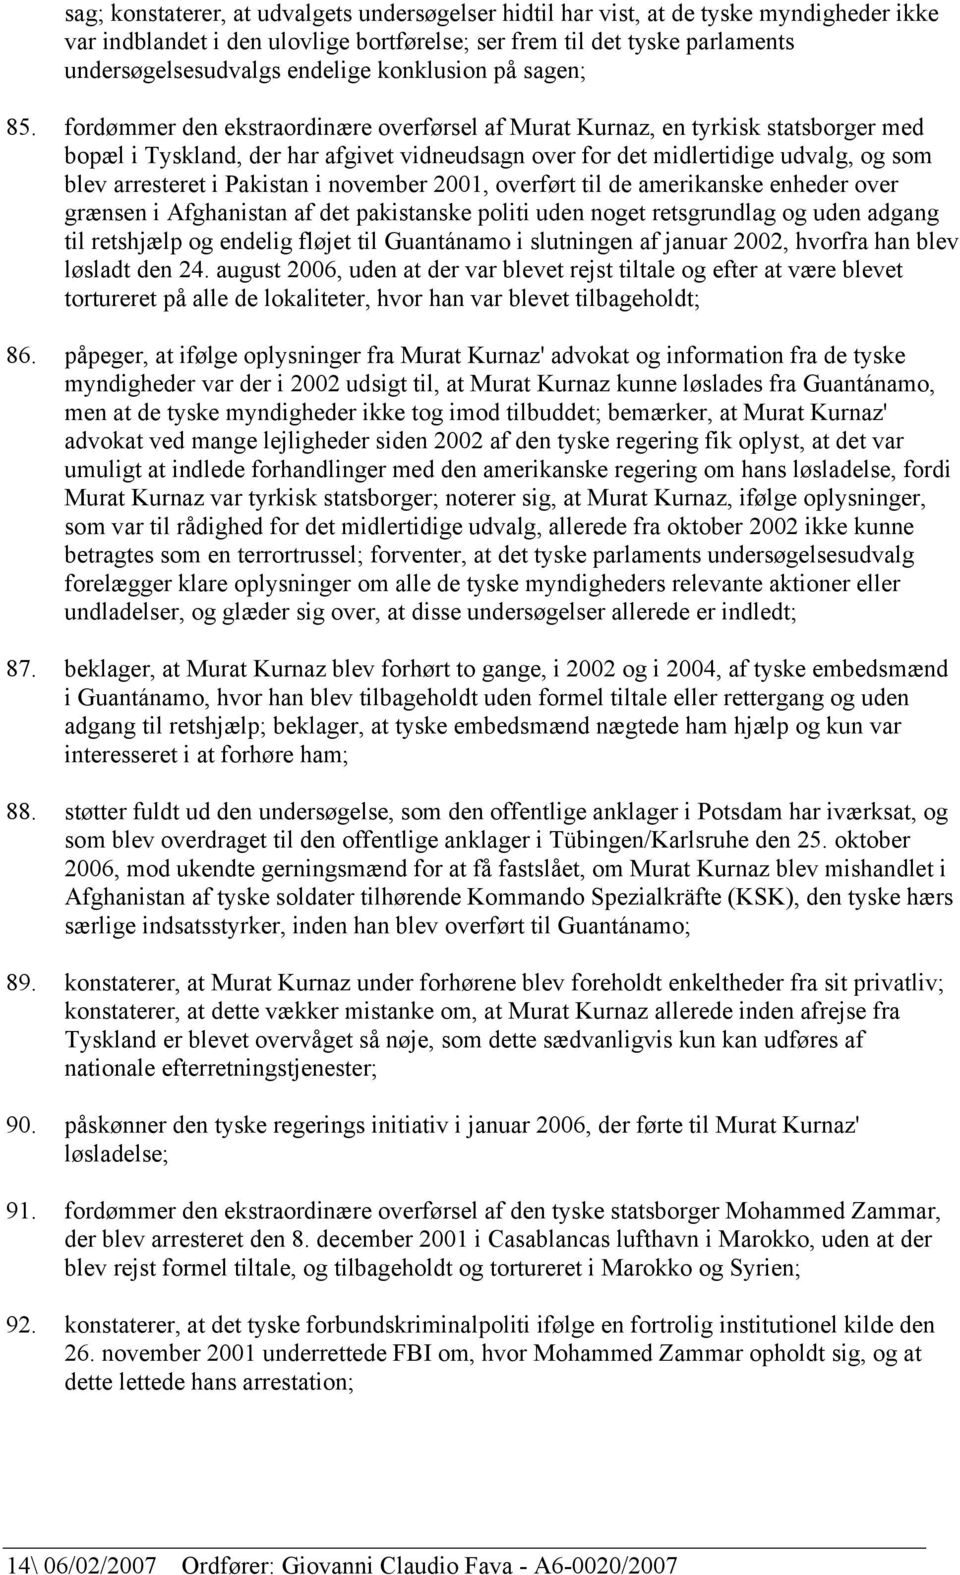 fordømmer den ekstraordinære overførsel af Murat Kurnaz, en tyrkisk statsborger med bopæl i Tyskland, der har afgivet vidneudsagn over for det midlertidige udvalg, og som blev arresteret i Pakistan i